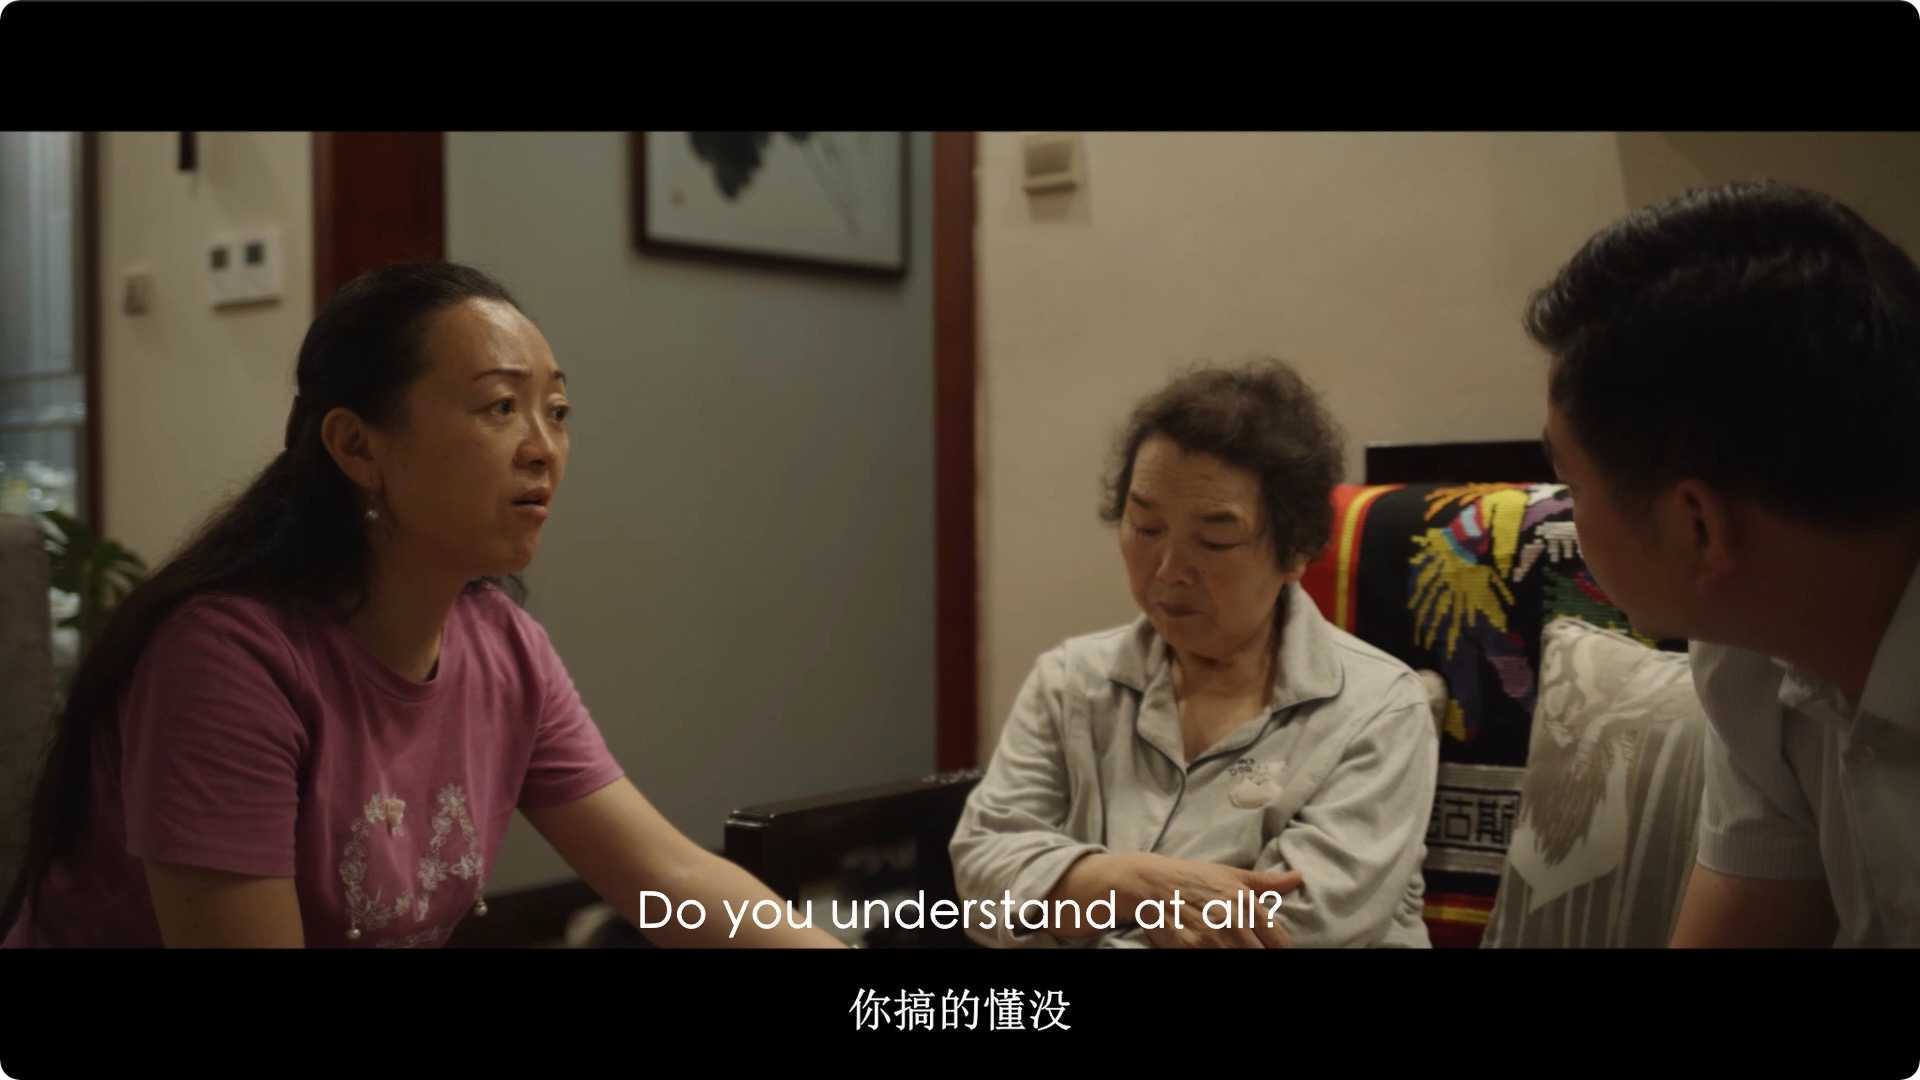 剧情短片《一朵爱莲》展现中国小城镇中年妇女真实生活困境